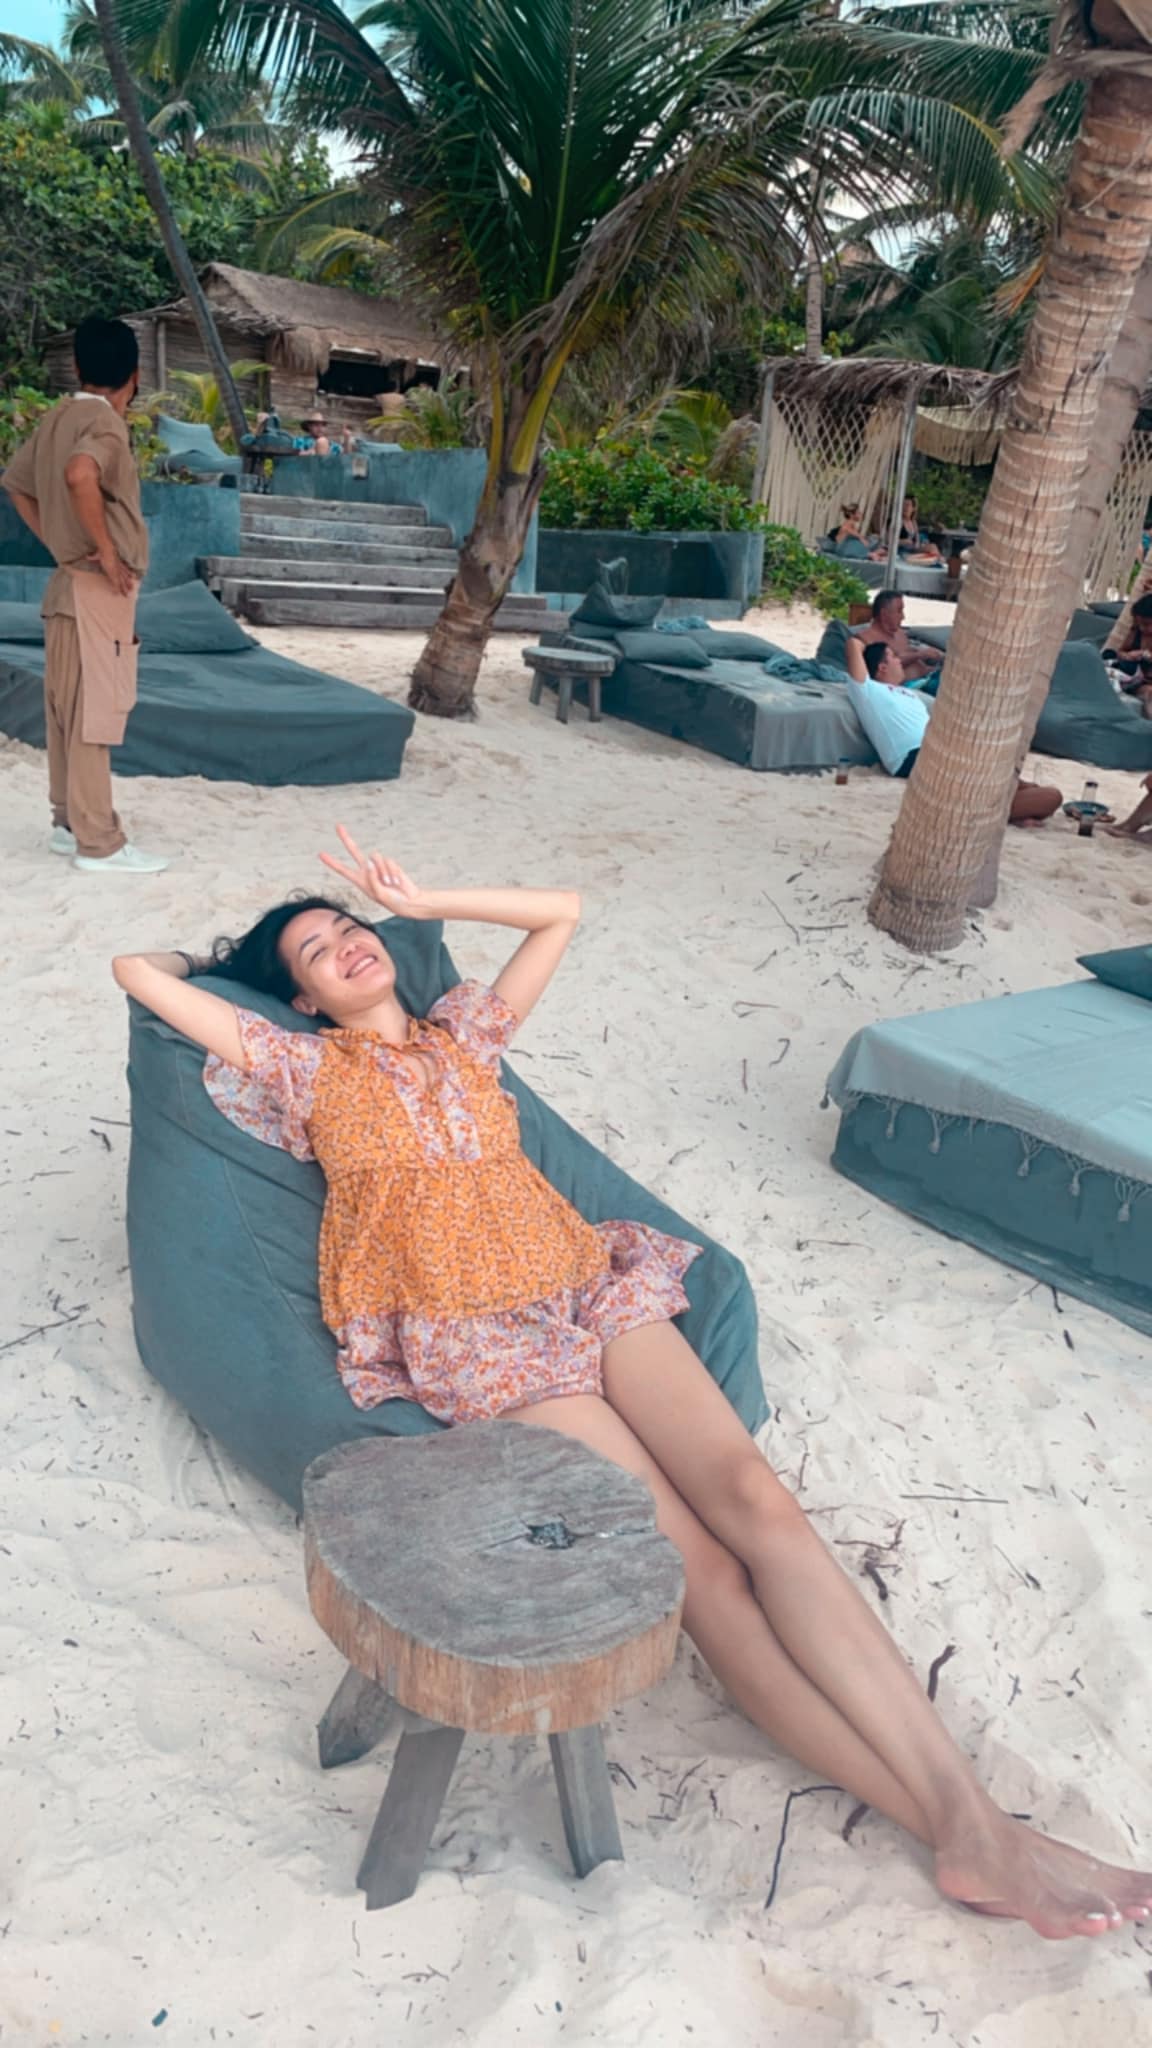 Hoa hậu Thùy Dung tận hưởng những ngày thảnh thơi ở Mỹ. Người đẹp nằm phơi nắng trên bãi biển, khoe đôi chân thon dài quyến rũ.